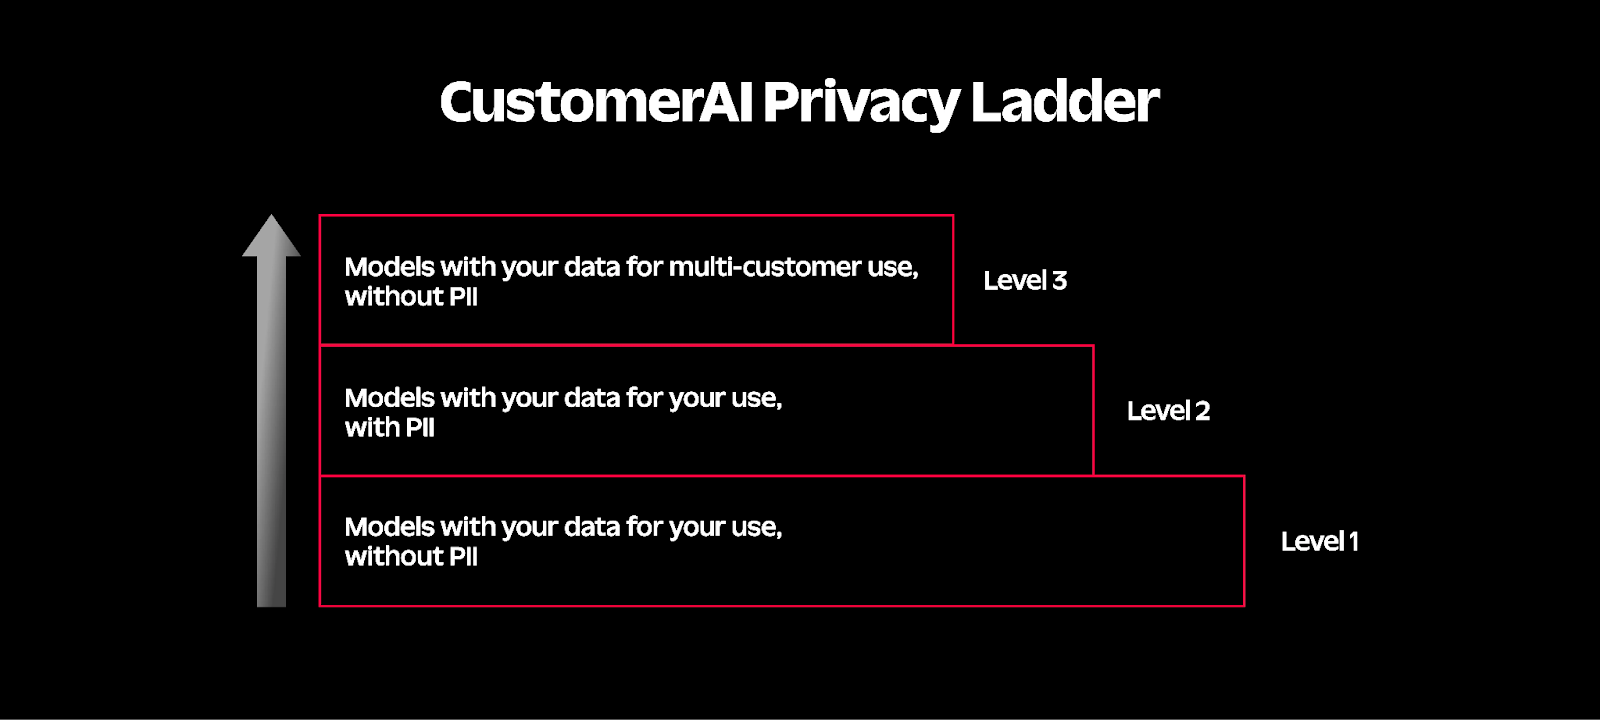 Twilio's CustomerAI Privacy Ladder